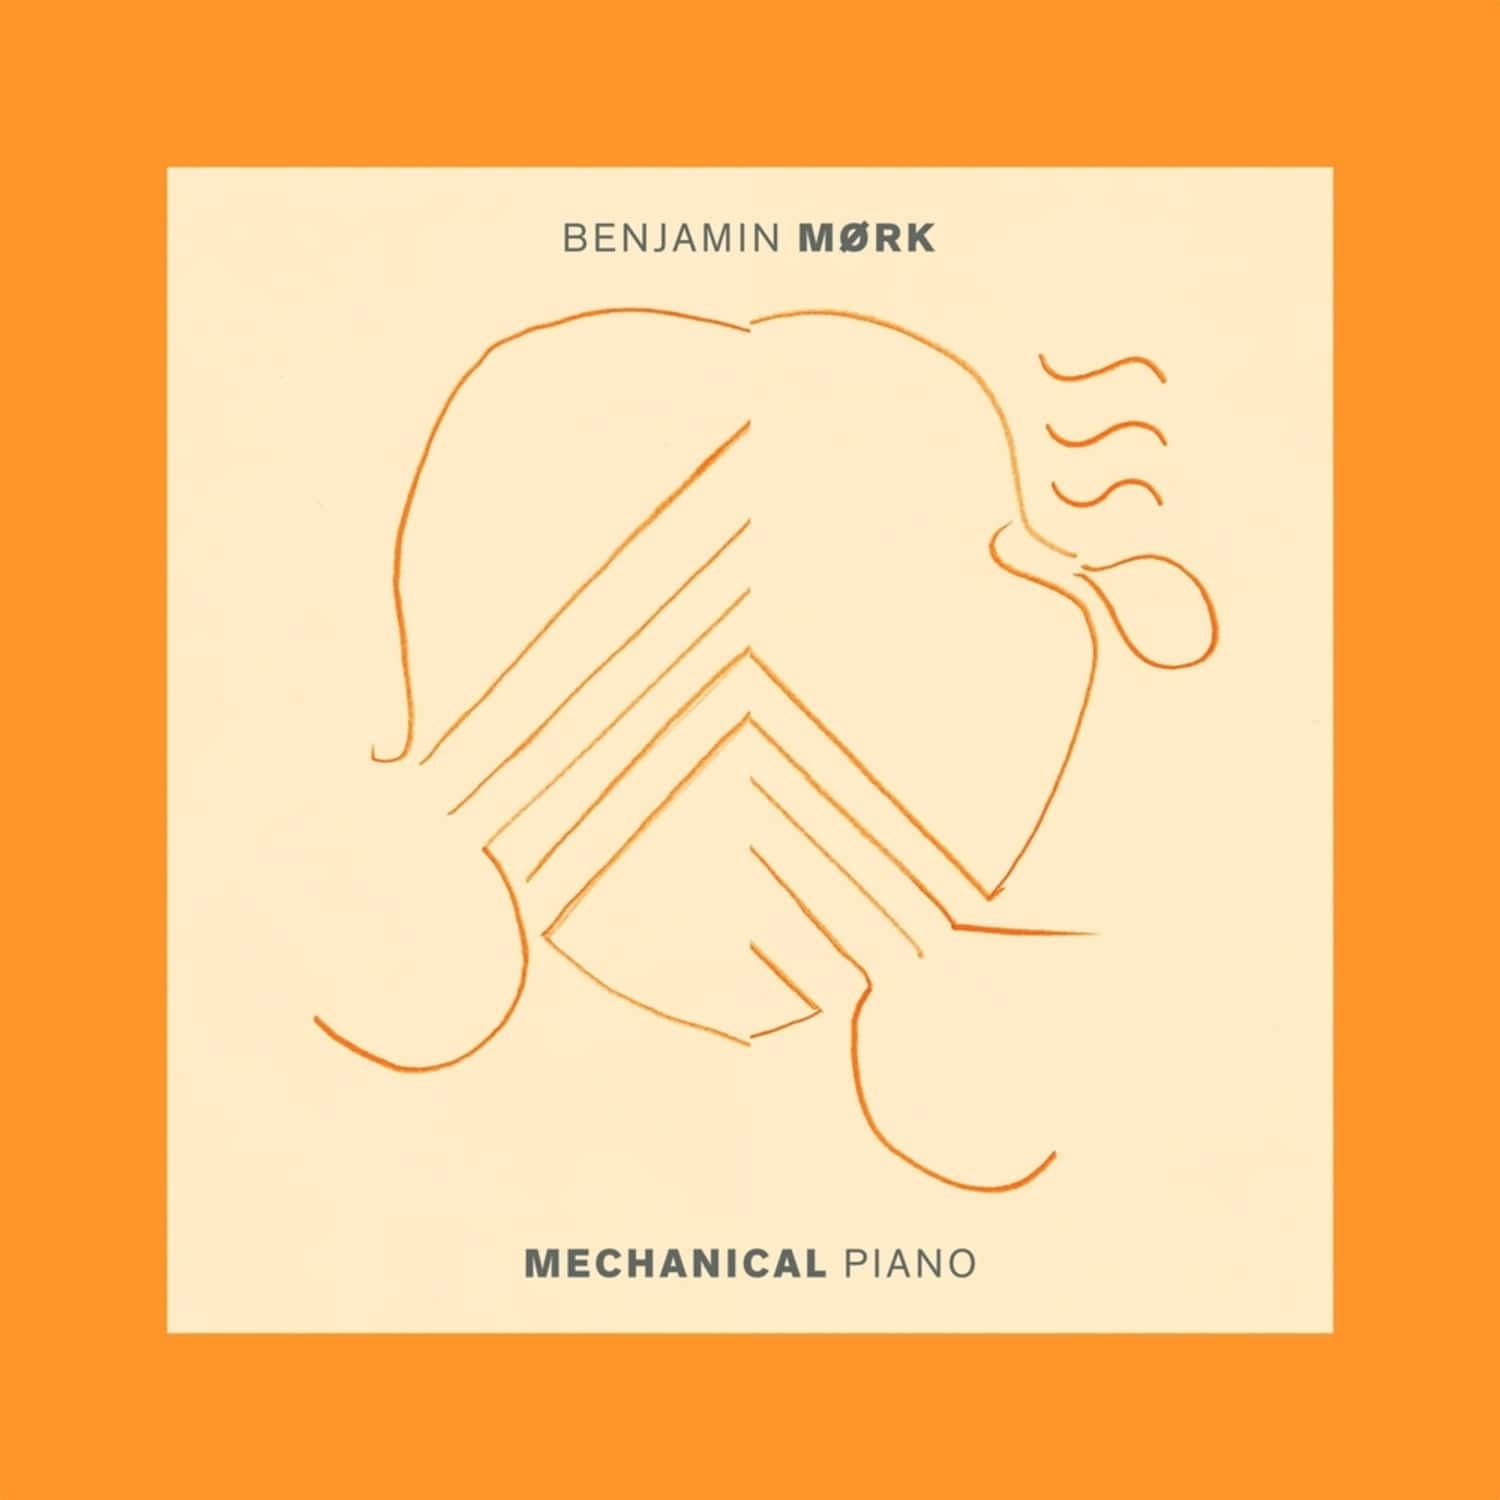 Benjamin Mork - MECHANICAL PIANO 